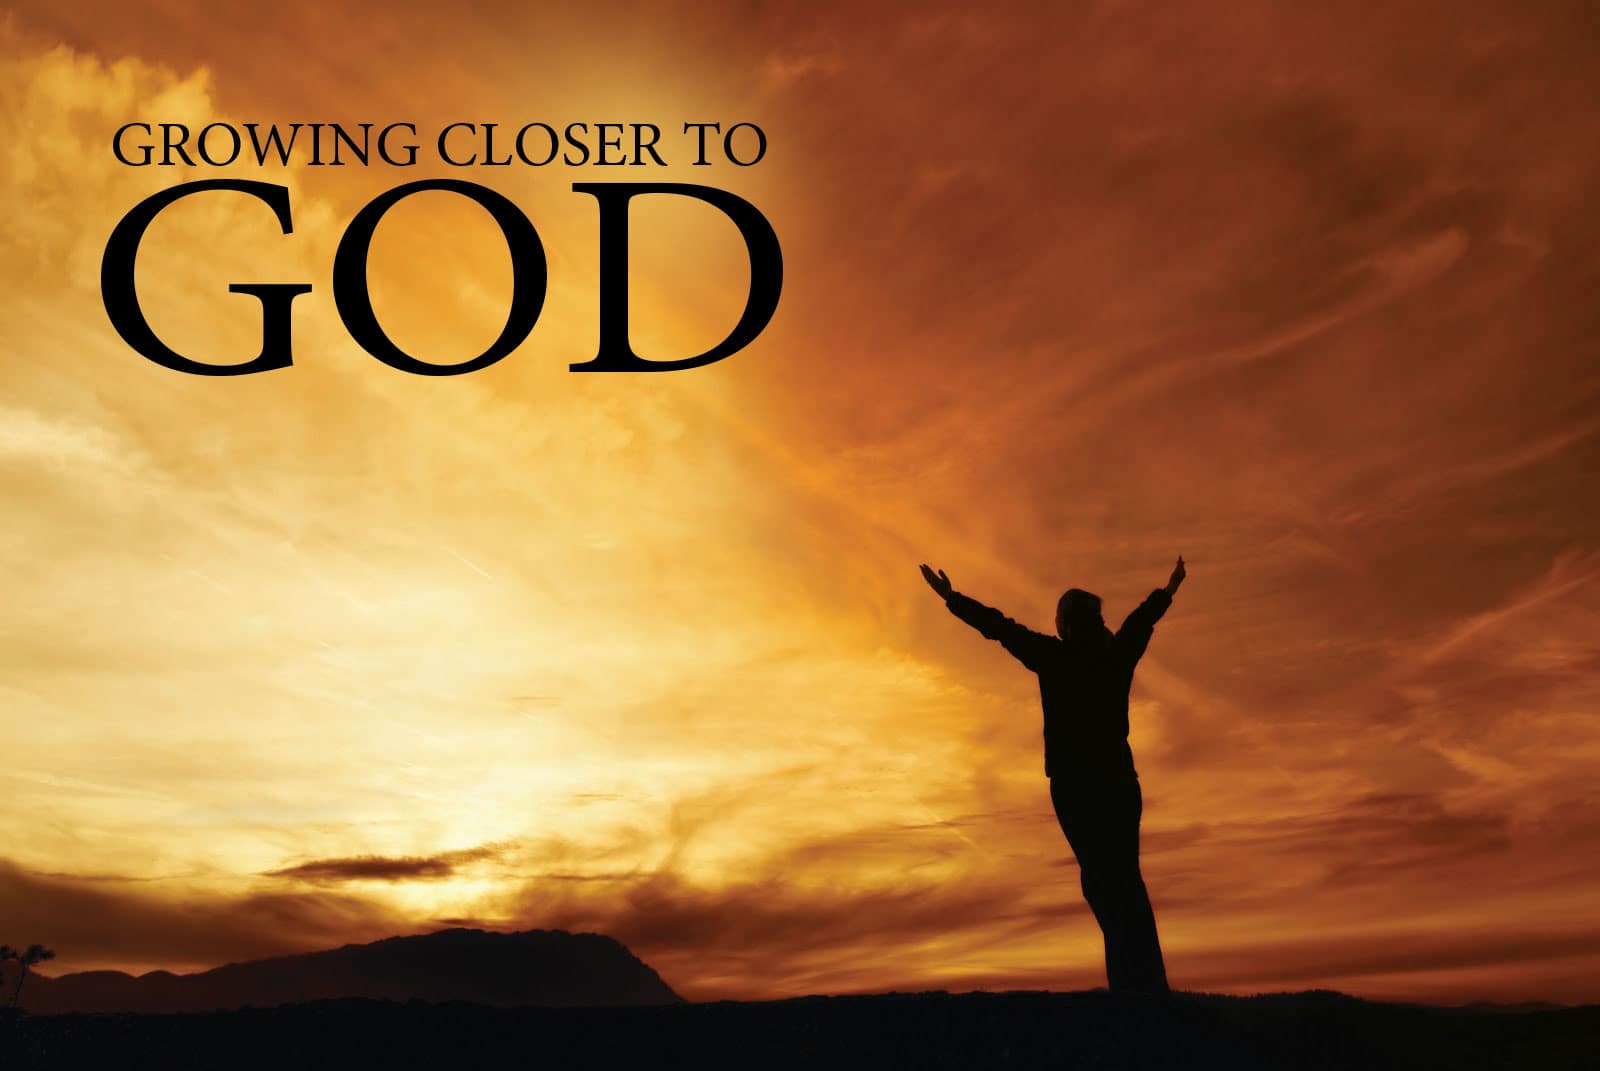 Close for good. Closer to God. Closer to God nin обои. Обои на телефон Praise God. Closer to God 2014.